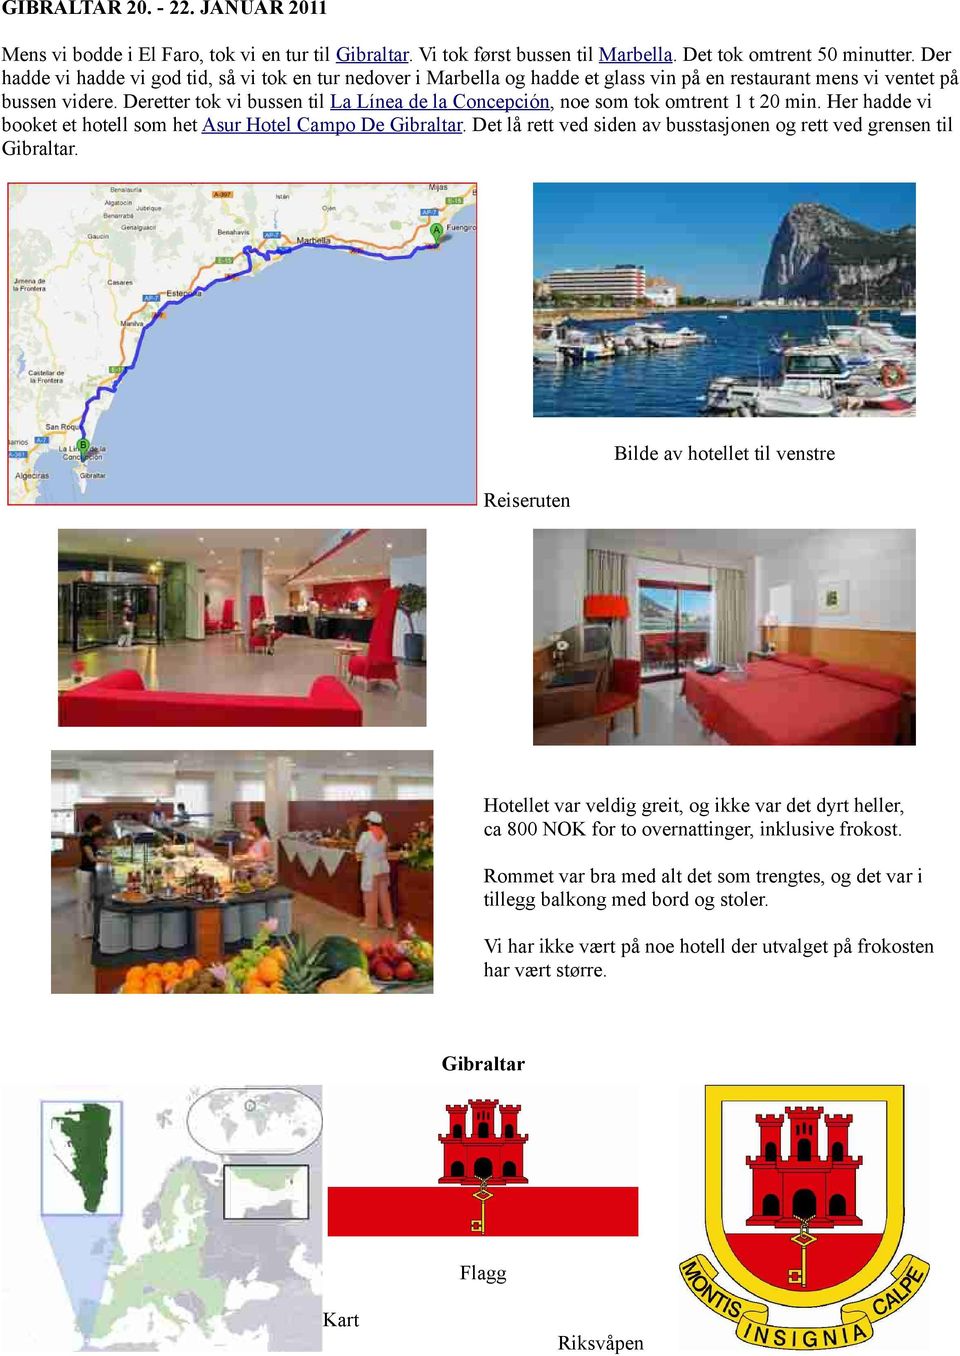 Deretter tok vi bussen til La Línea de la Concepción, noe som tok omtrent 1 t 20 min. Her hadde vi booket et hotell som het Asur Hotel Campo De Gibraltar.